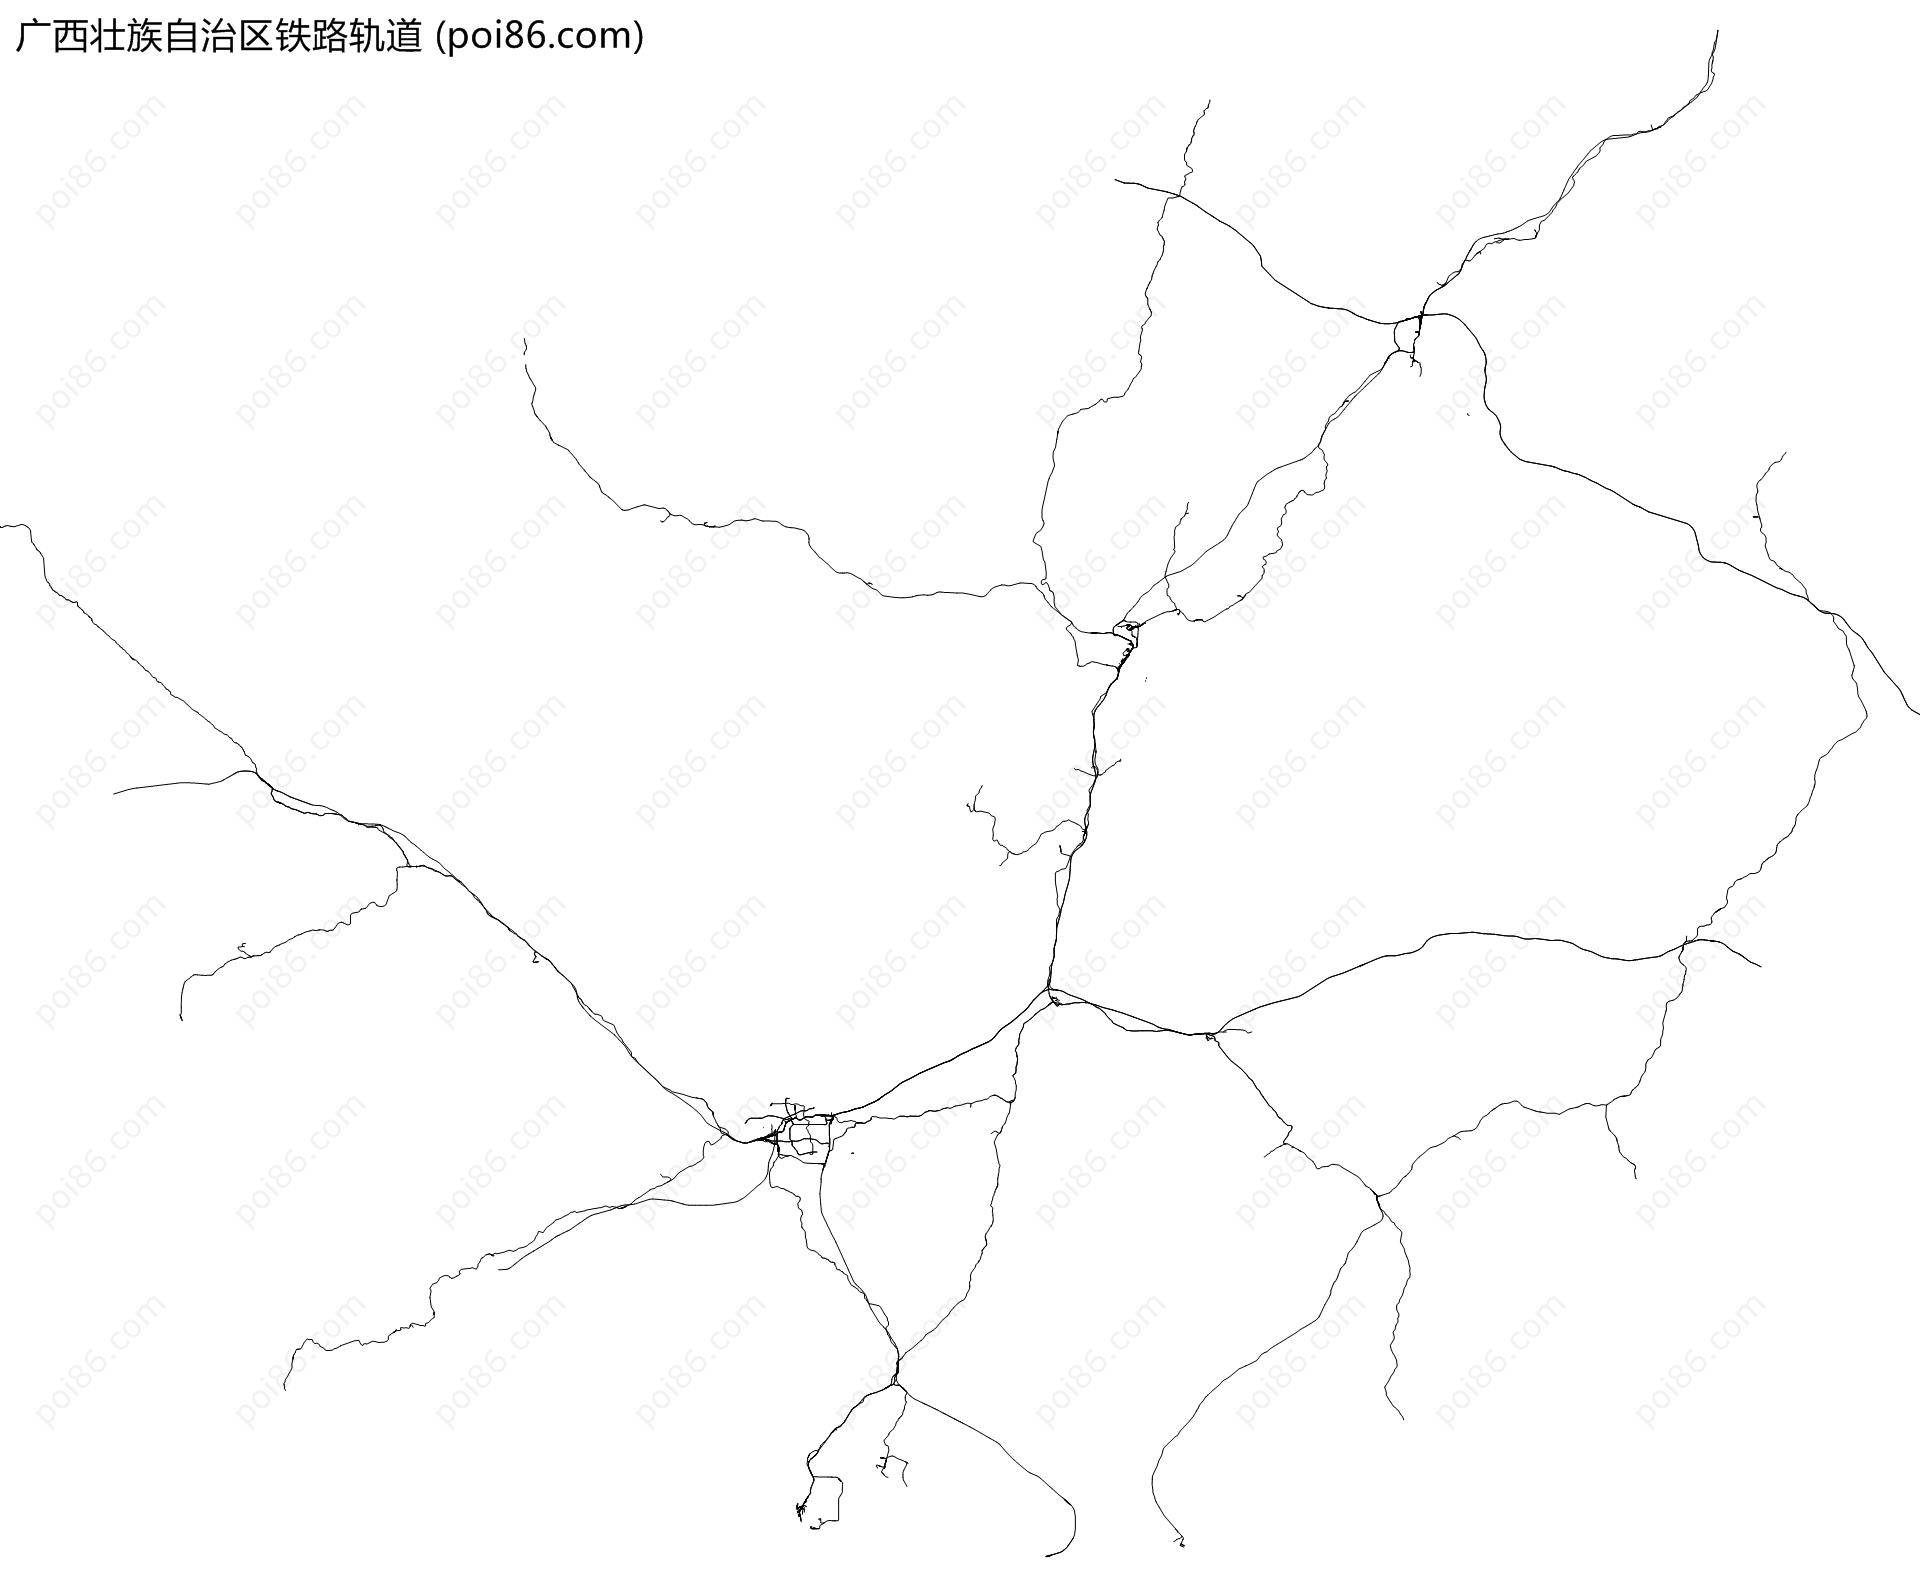 广西壮族自治区铁路轨道地图